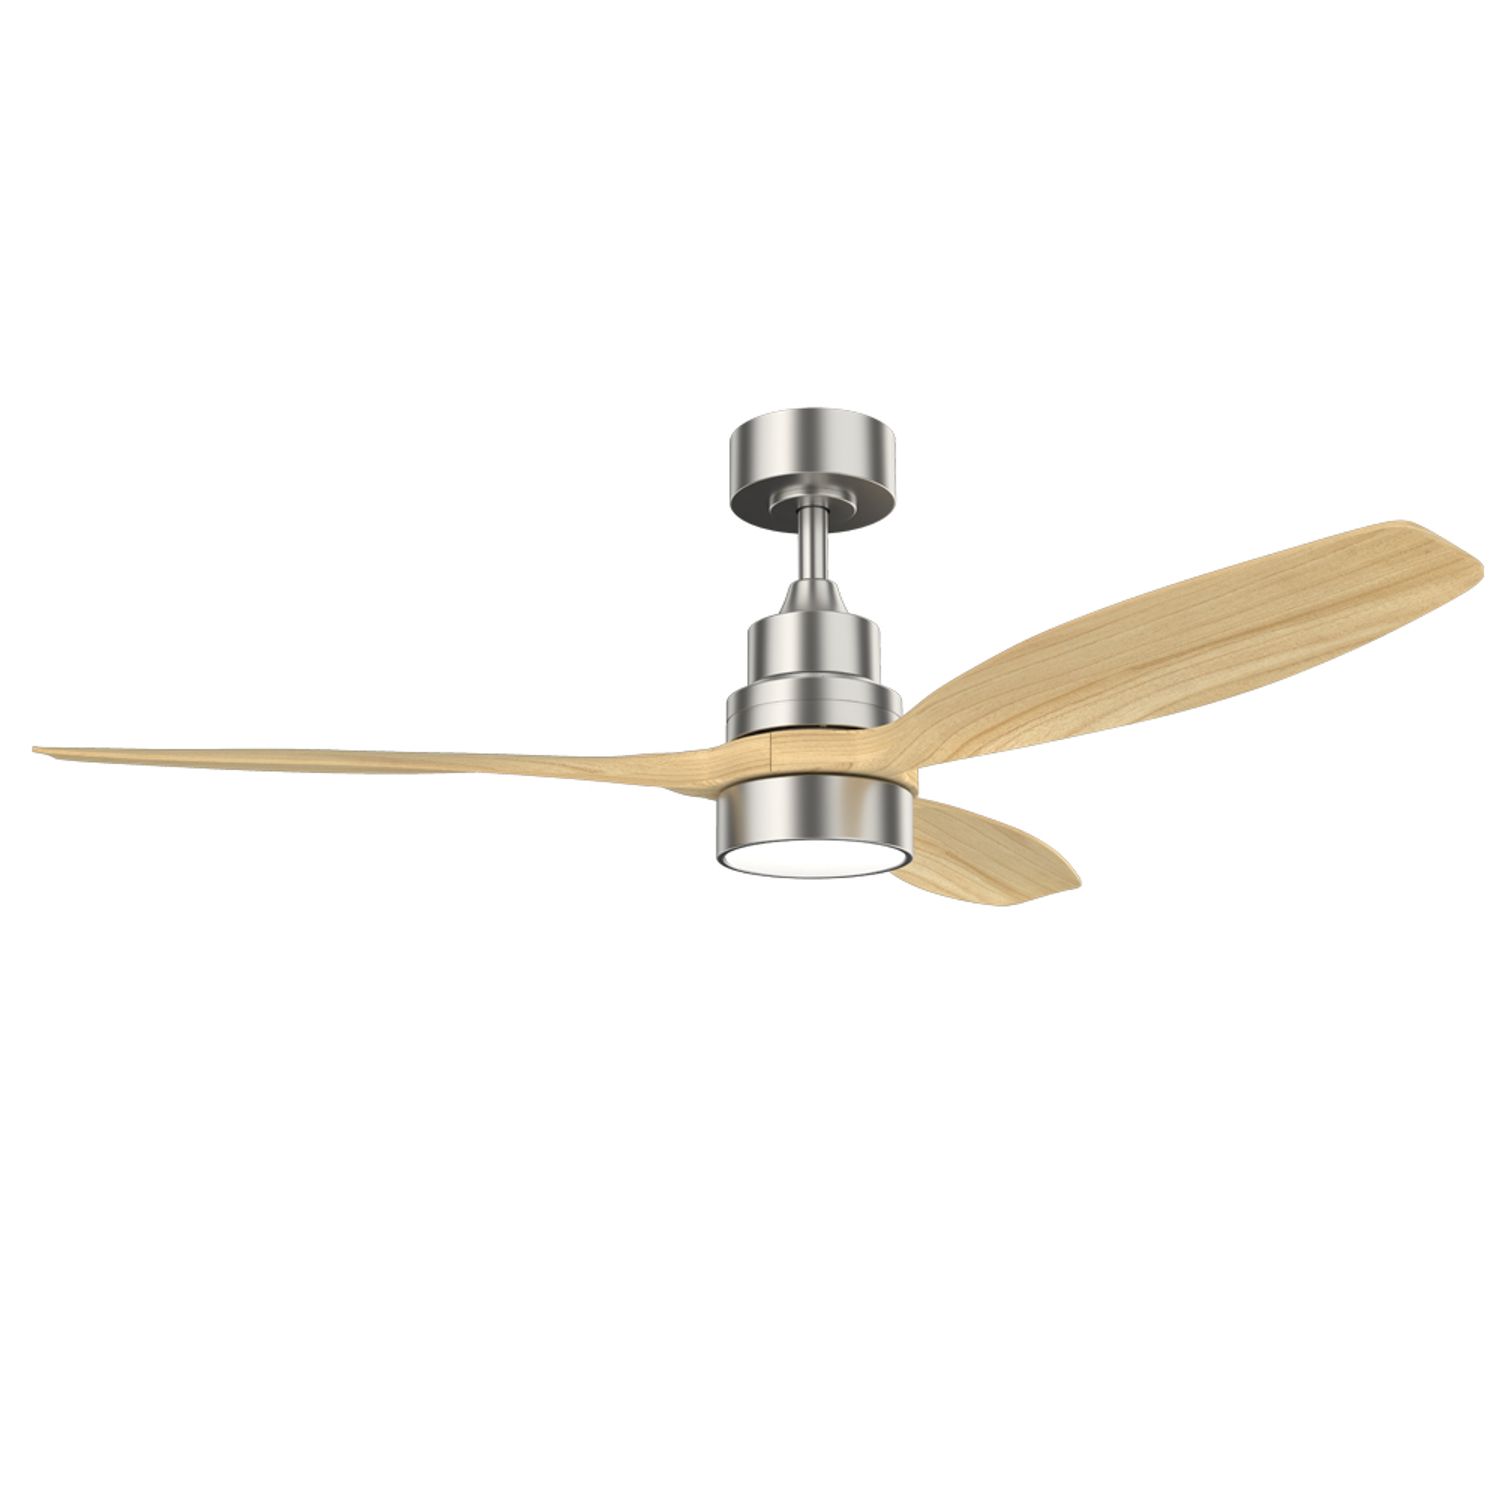 KBS modern wood fan with light wholesale